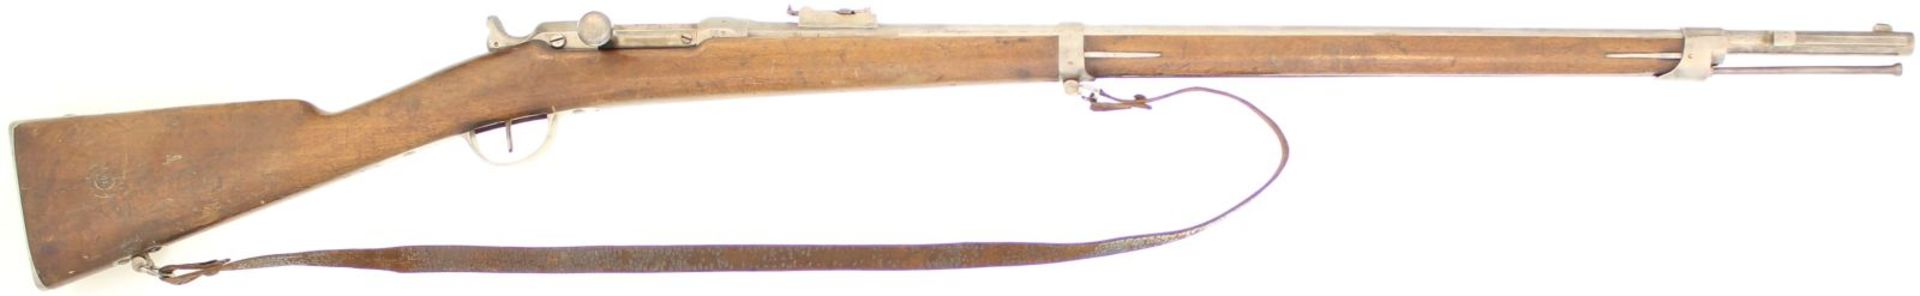 Zündnadelgewehr Chassepot 1866, Kal. 14mm. Metallteile blank, spiegelblanker Lauf, gestempelt: "M.